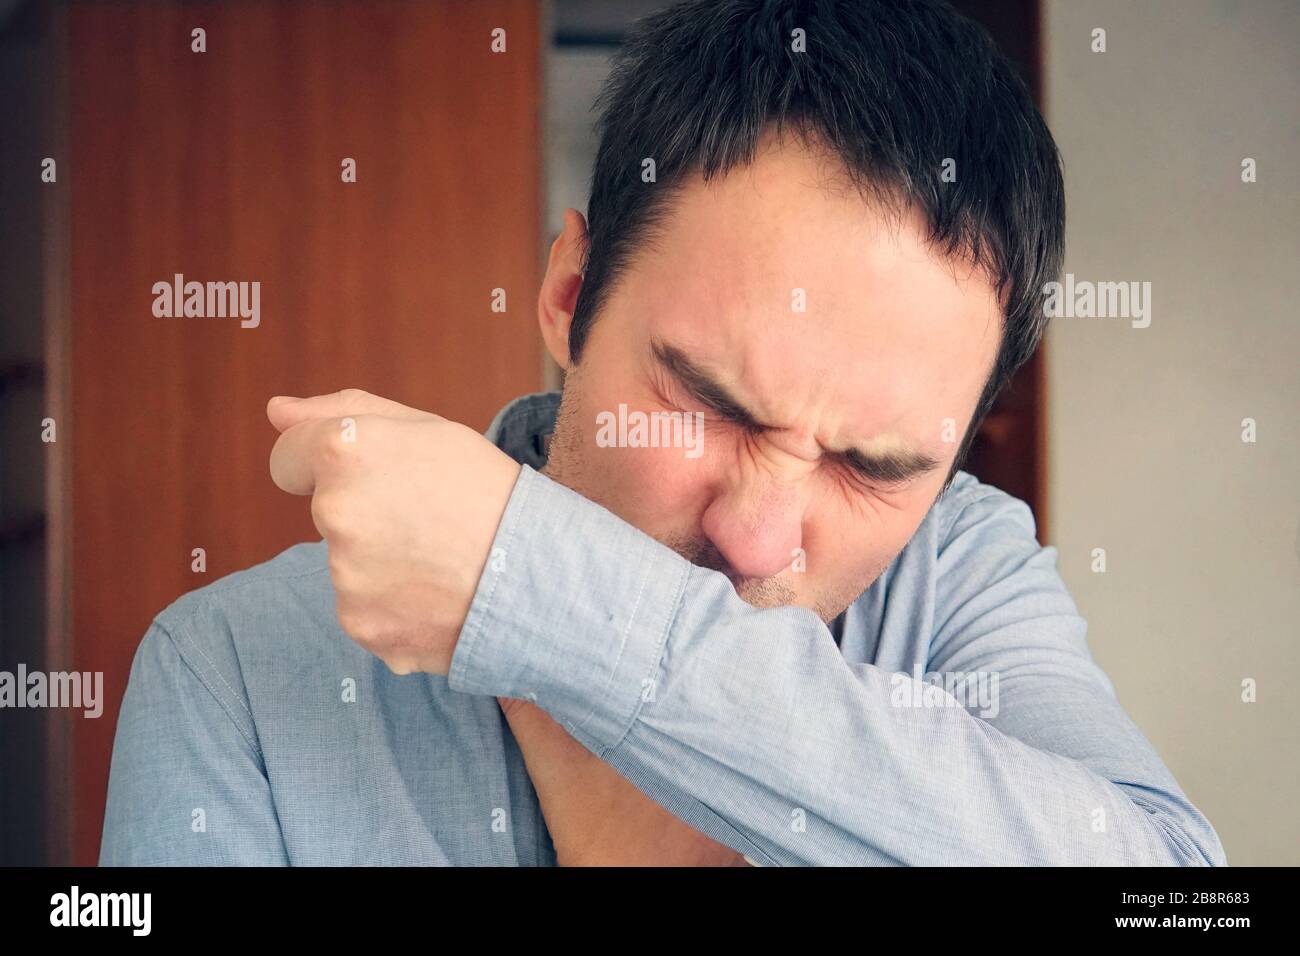 Mann, der die Grippe hat und auf dem Ärmel im Krämer ihres Arms niest. Ein junger Kerl hustet in den Stoff seines Hemdes, um die Verbreitung von Viren zu verhindern Stockfoto